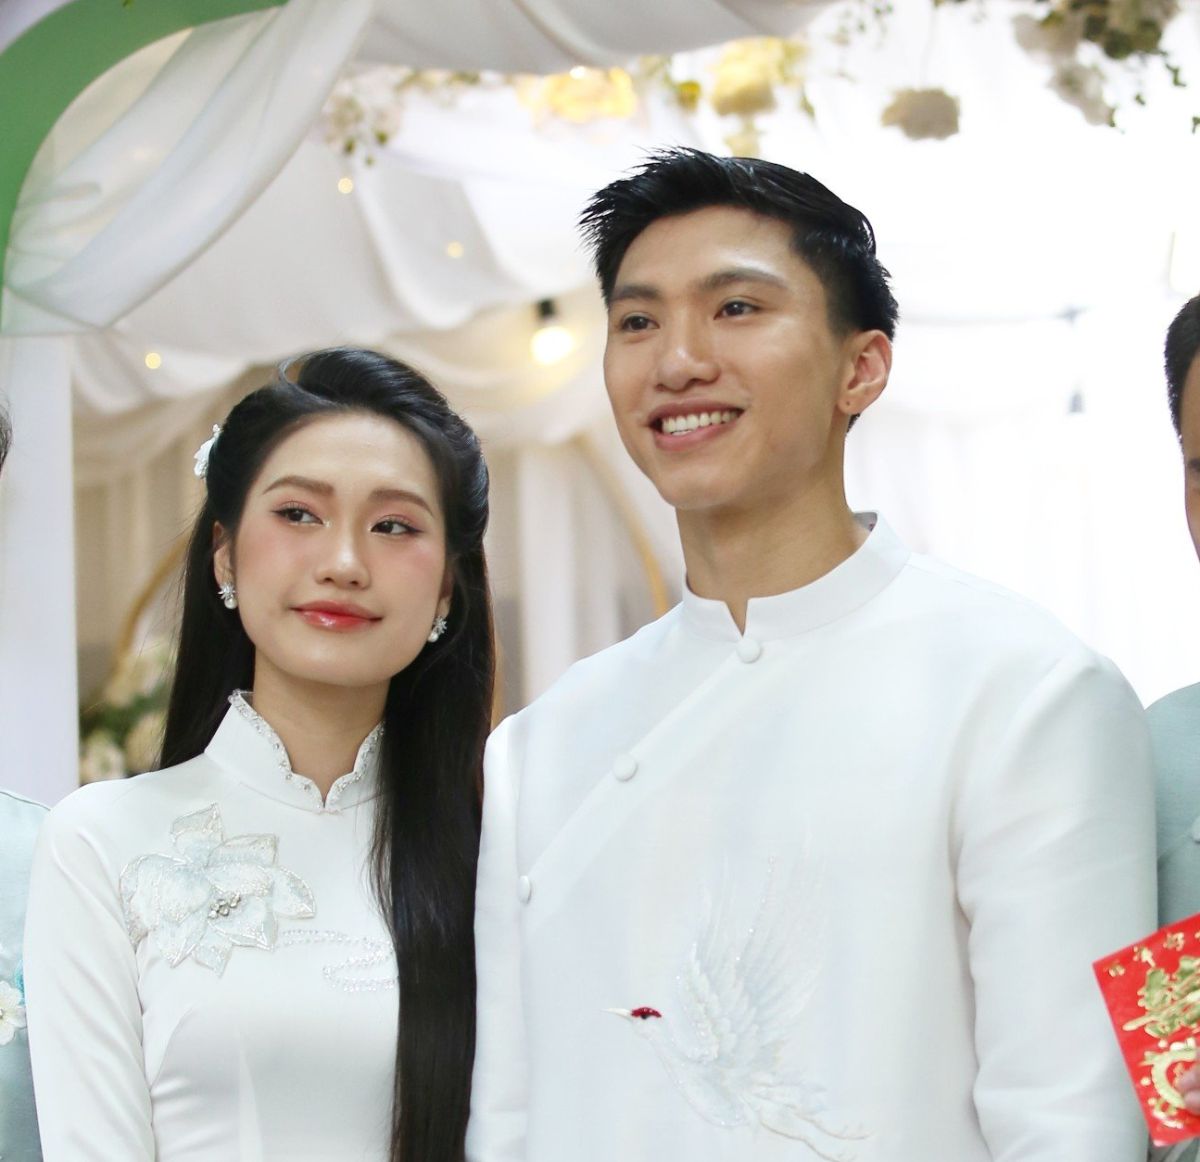 Sau khi rước dâu ở Hà Nội, chiếc xe chở Hải Mỹ, Văn Hậu sẽ về Thái Bình làm đám cưới vào chiều nay  